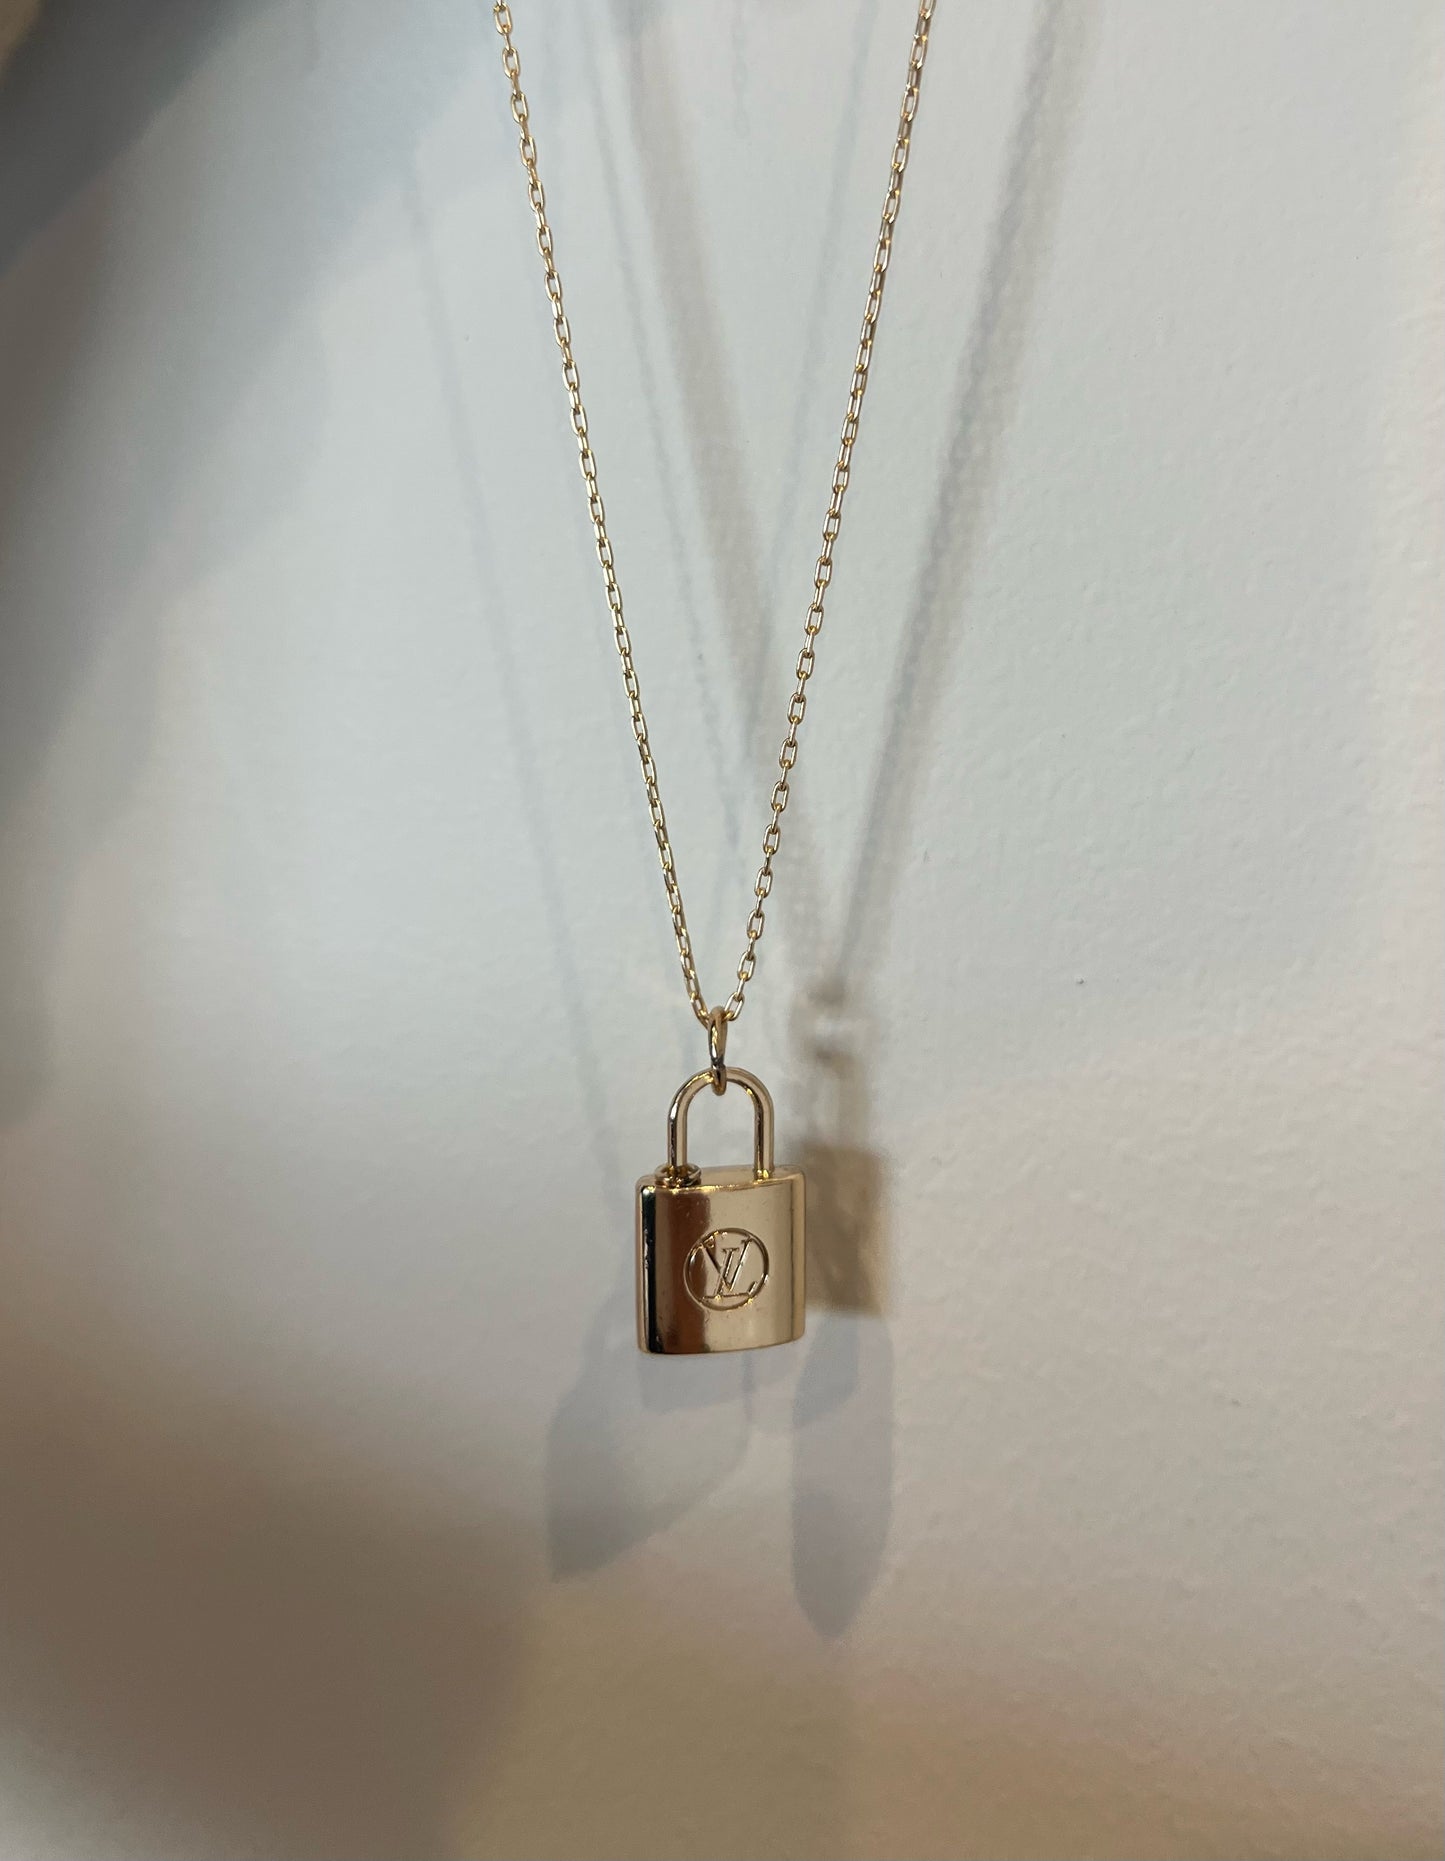 Vintage Lock Necklace